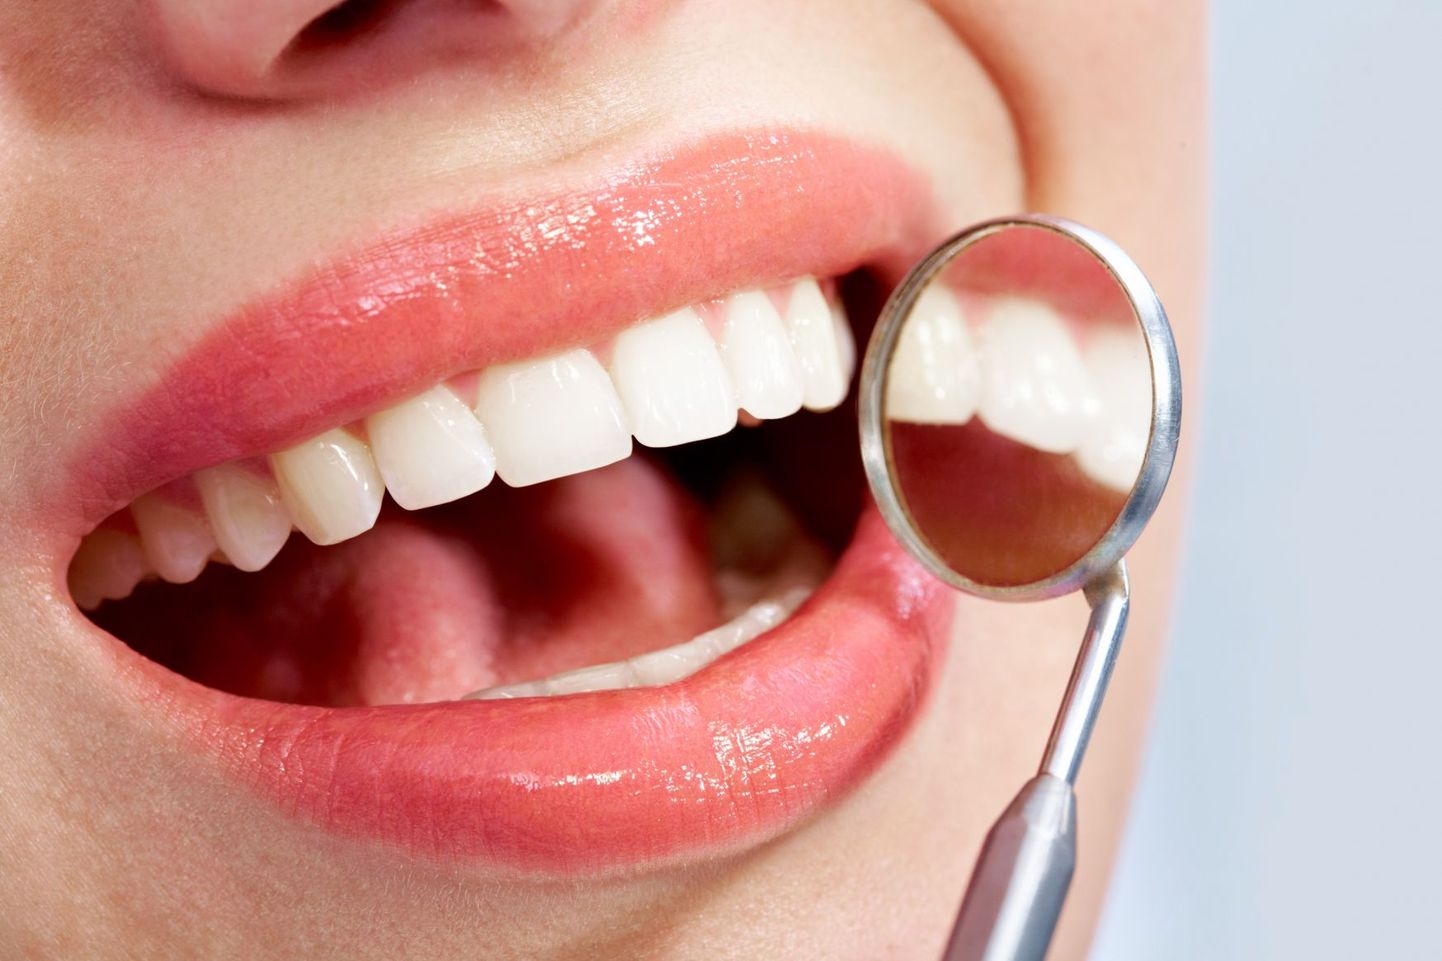 Чтобы выявить возможные заболевания полости рта, необходимо регулярно посещать врача-стоматолога.